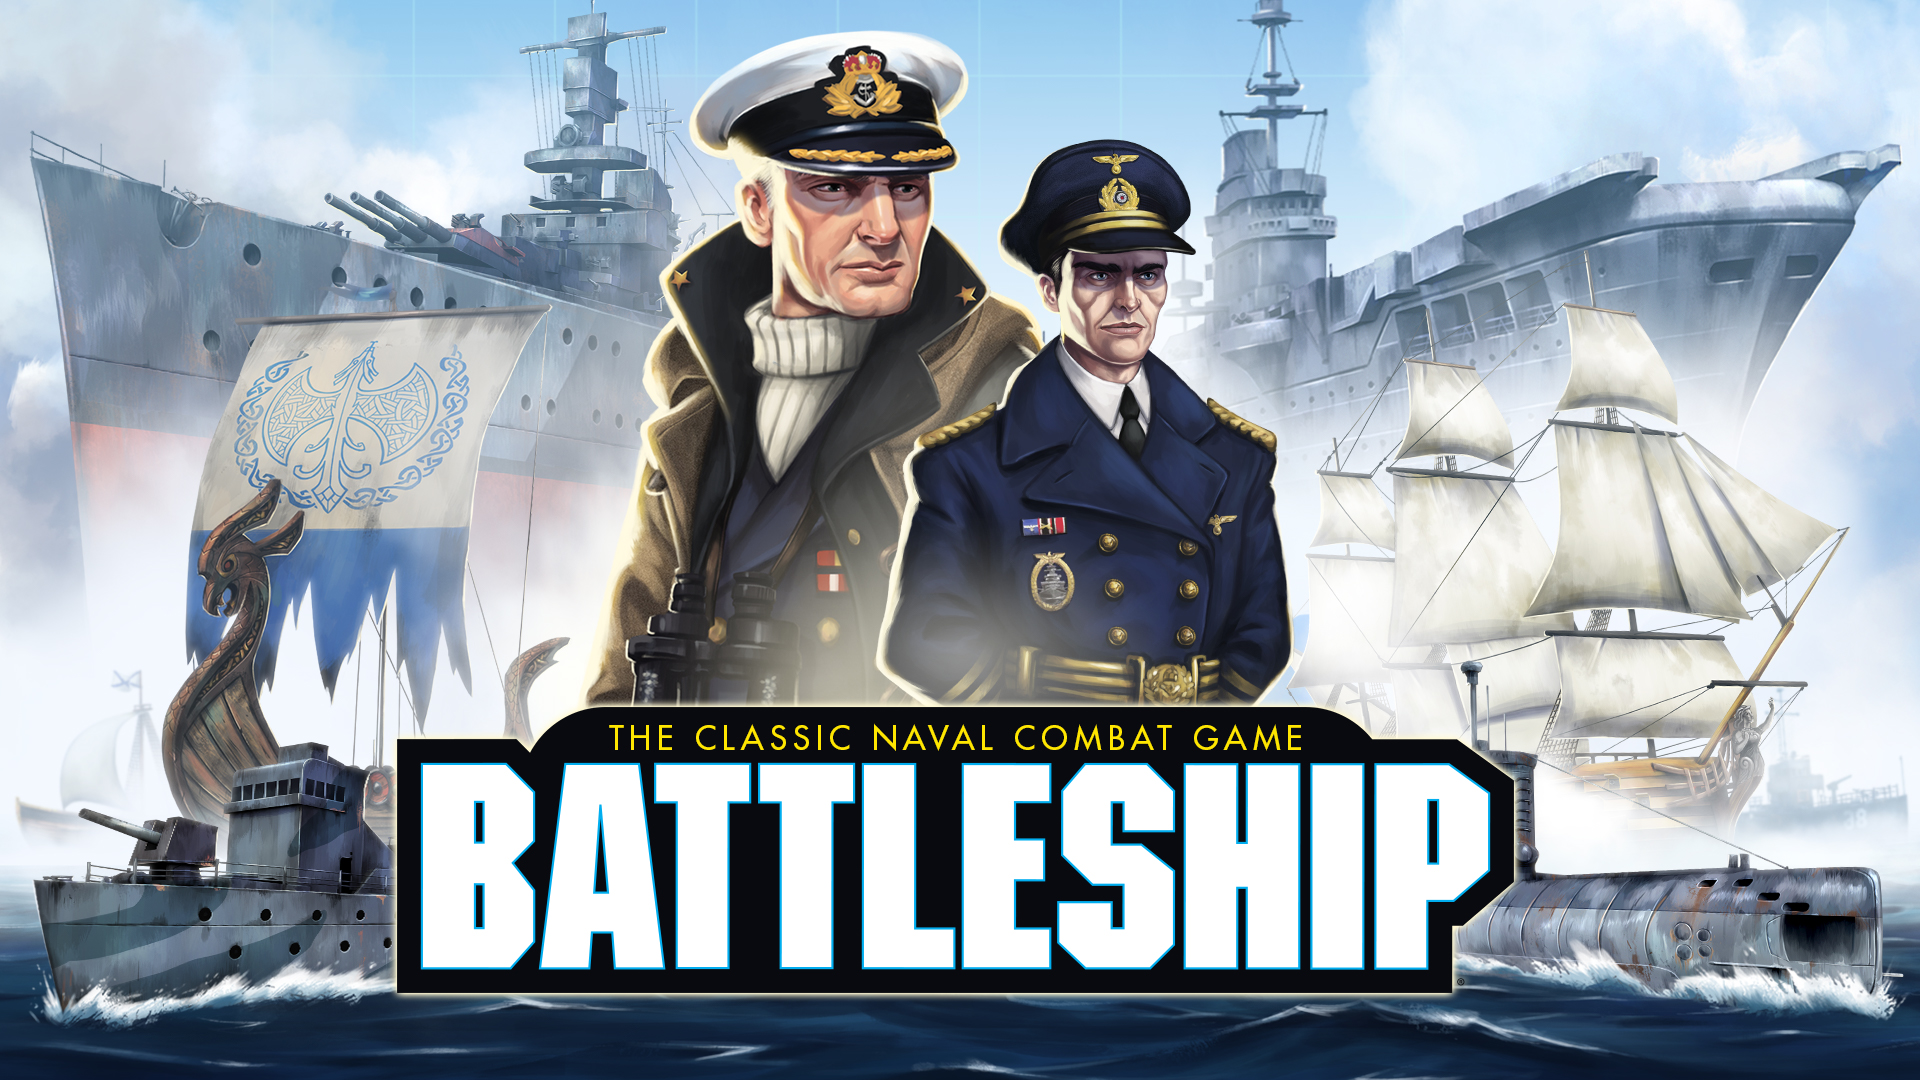 25 Jogos de Navio de Guerra e Batalha Naval